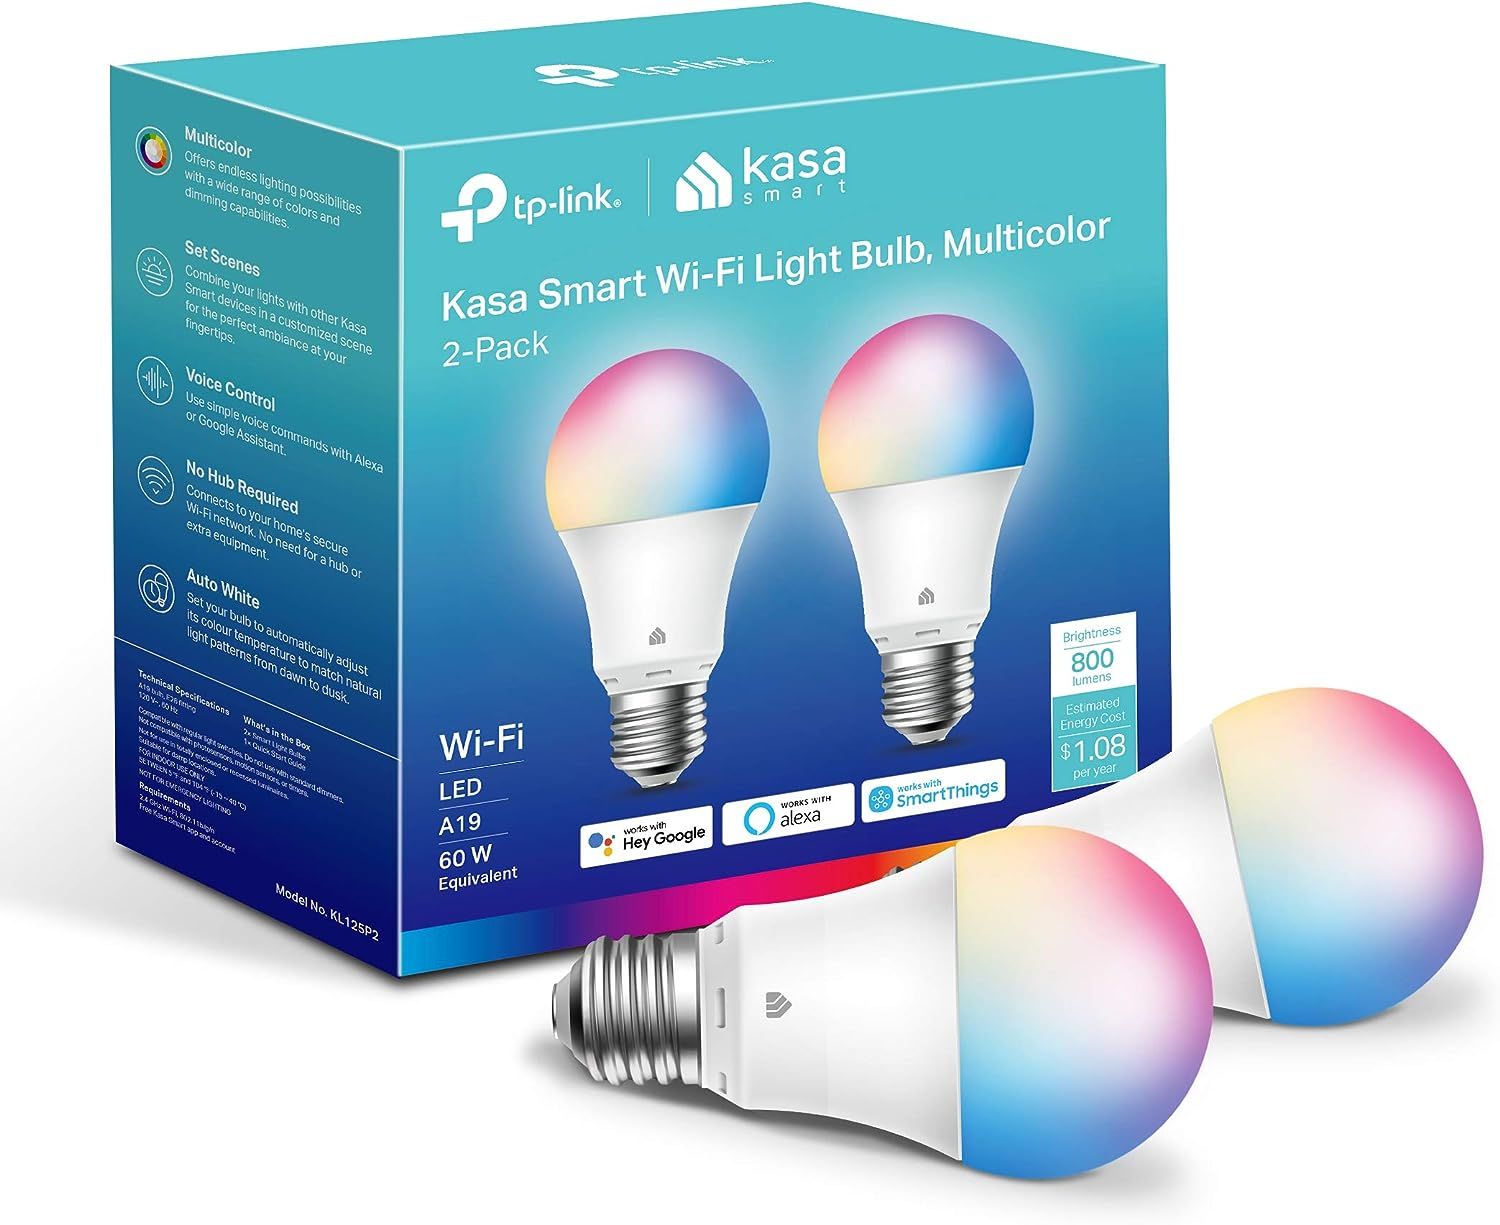 kasa-kl125p2-smart-bulb-2-pack